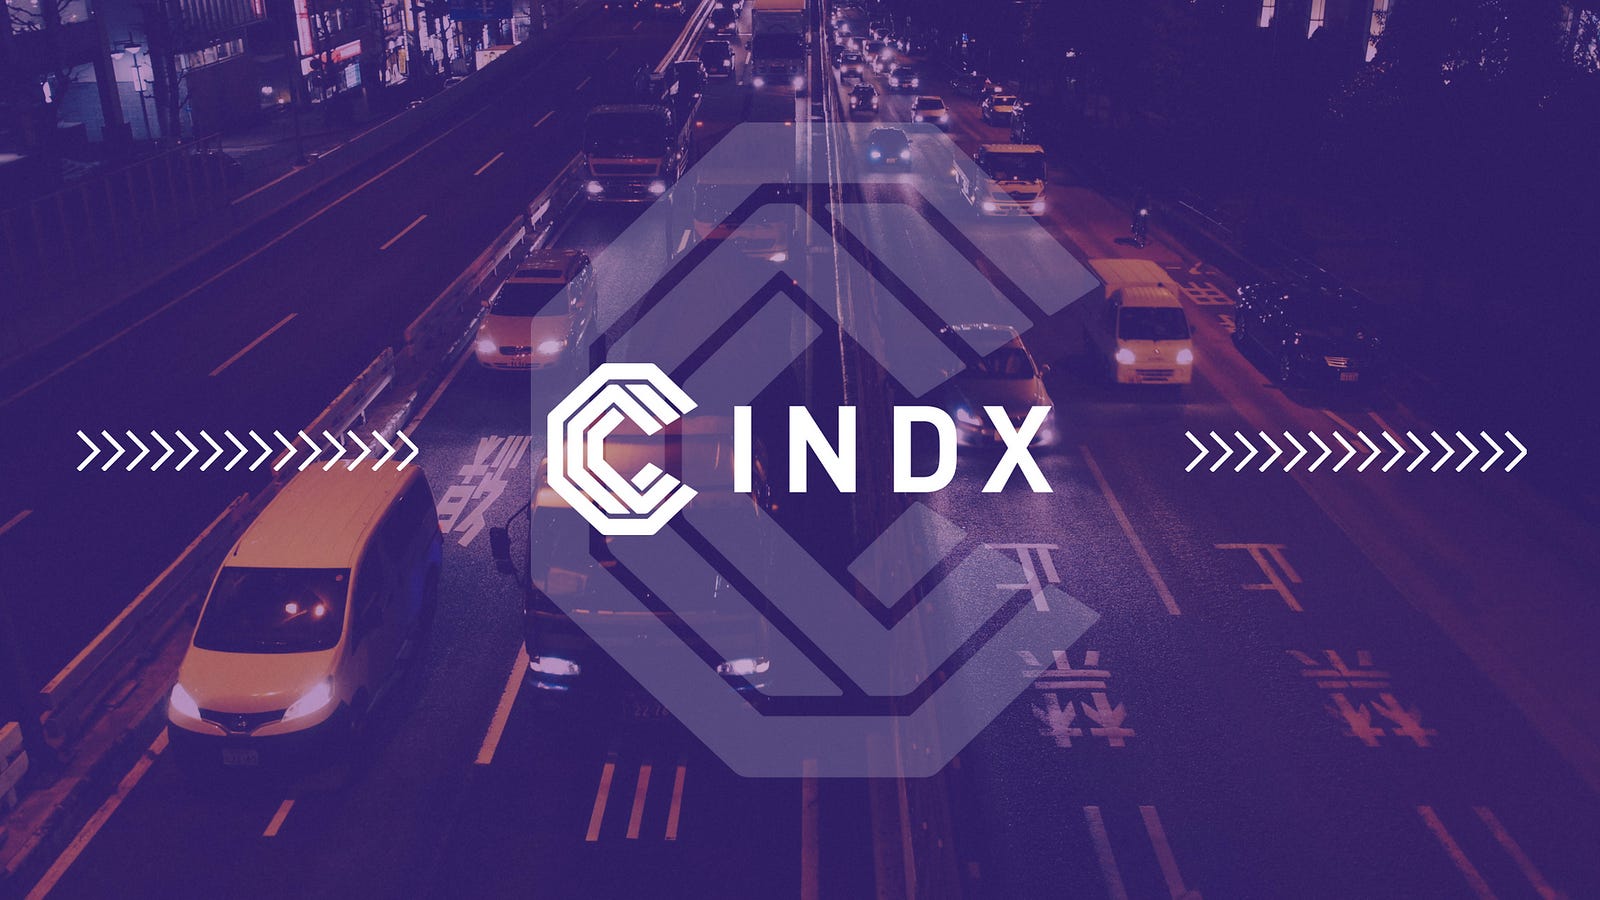 Hasil gambar untuk cindx